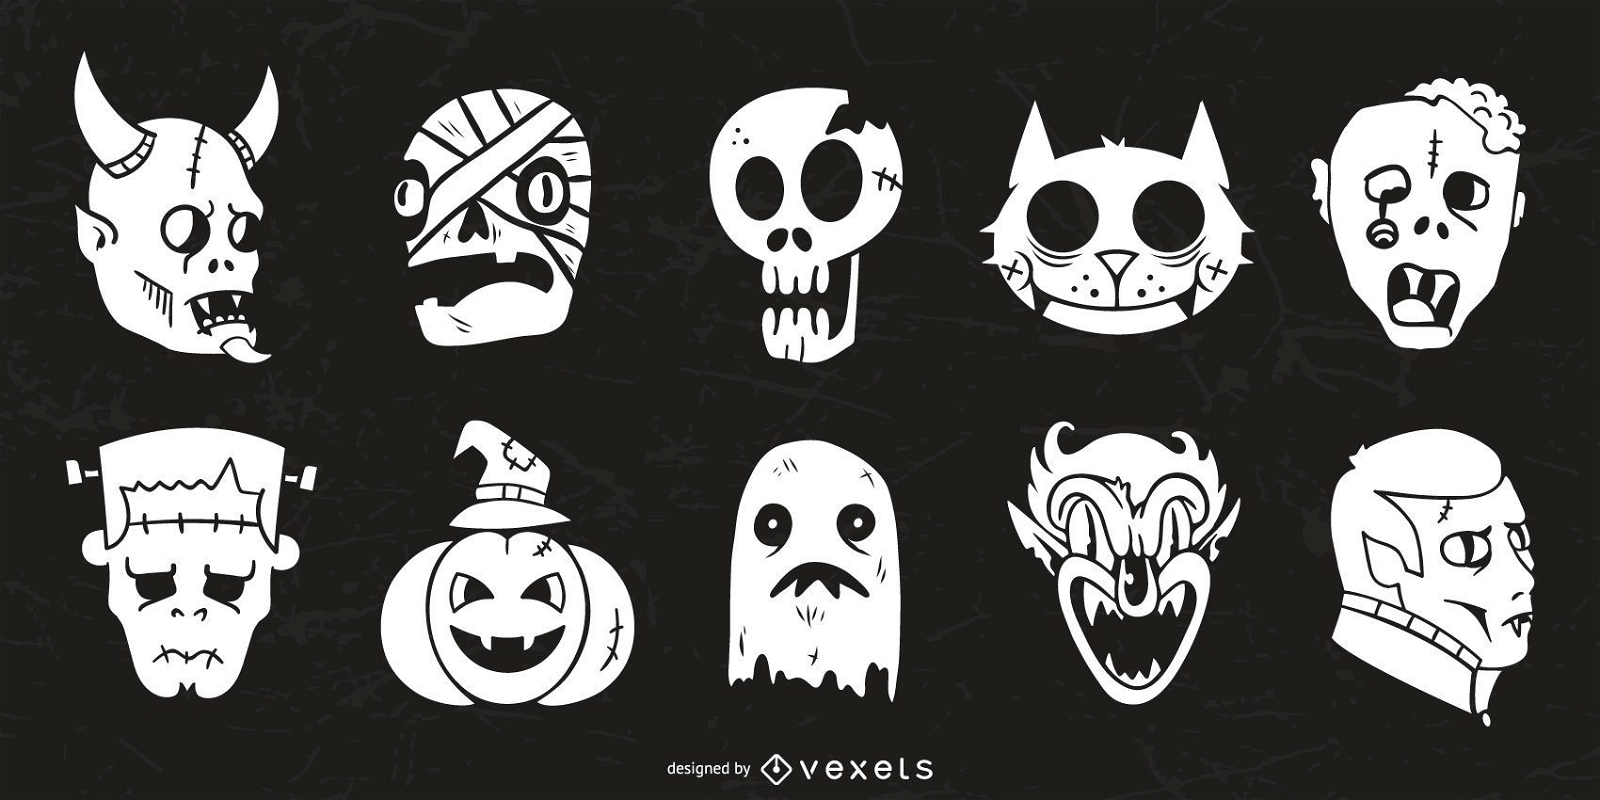 Desenhando personagens de Halloween com silhueta e proporções diferentes –  Blog da AreaE